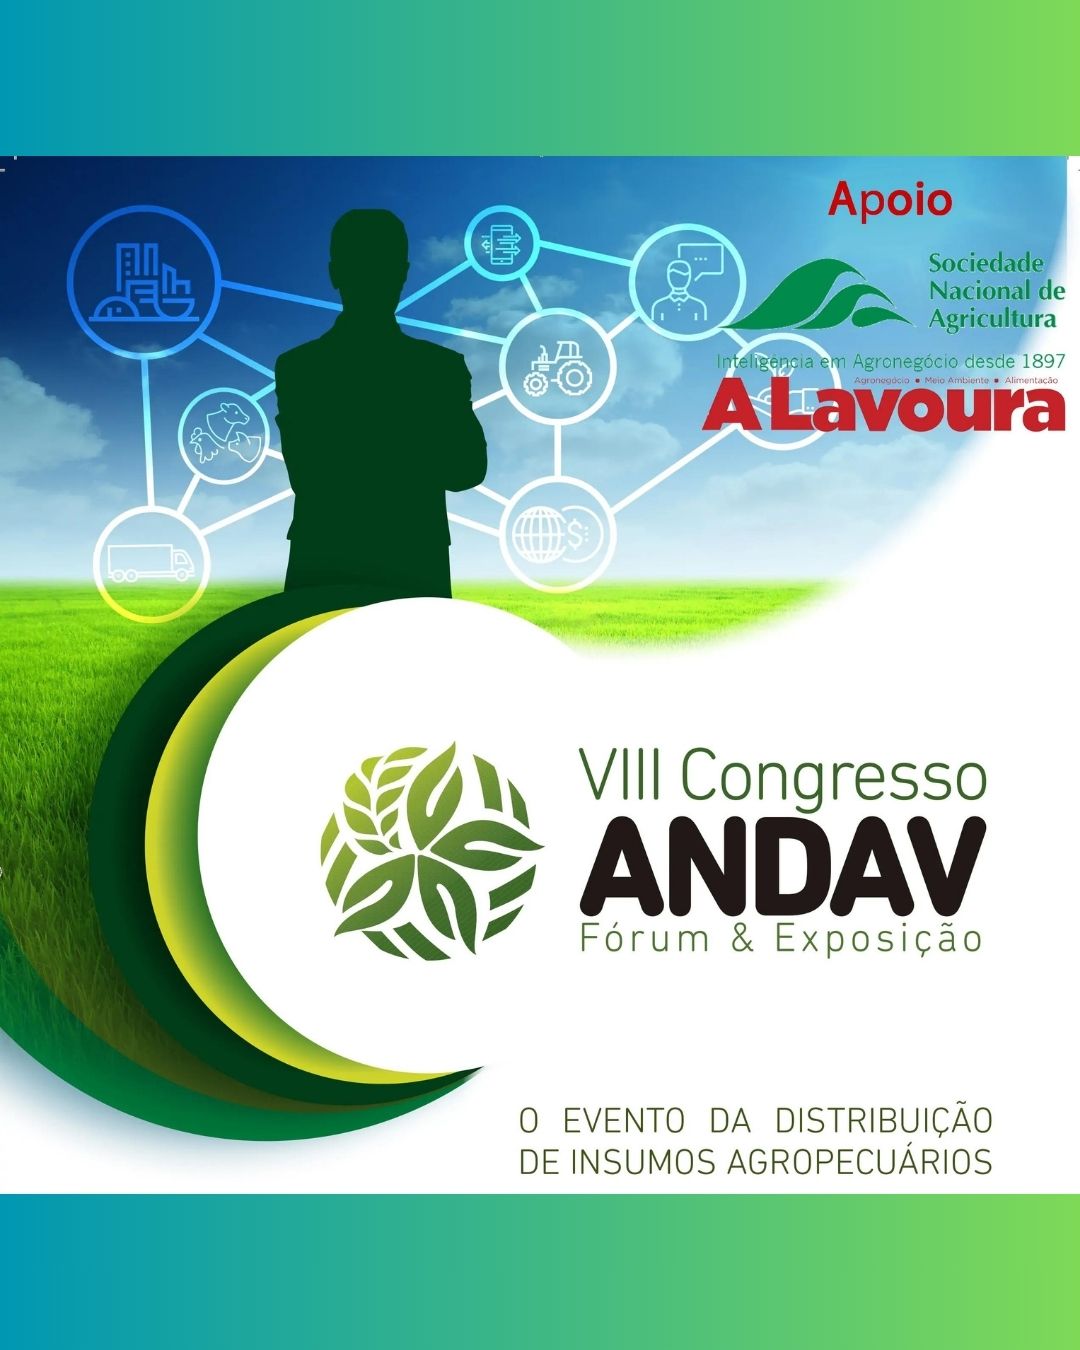 13º Congresso Andav debaterá macroeconomia, desafios e distribuição